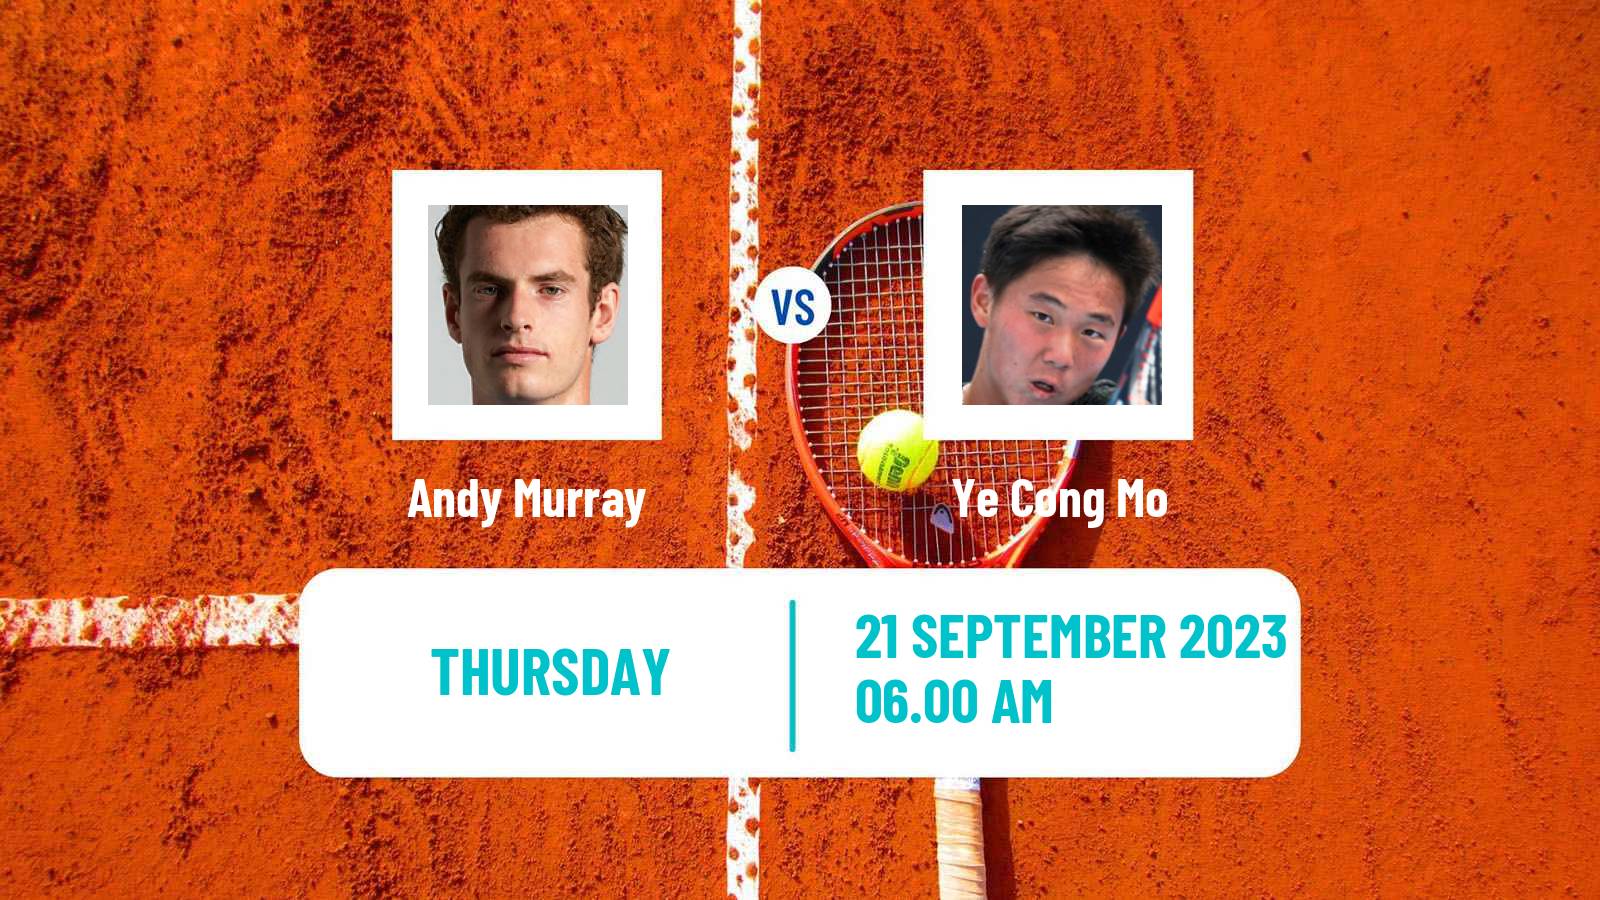 Tennis ATP Zhuhai Andy Murray - Ye Cong Mo